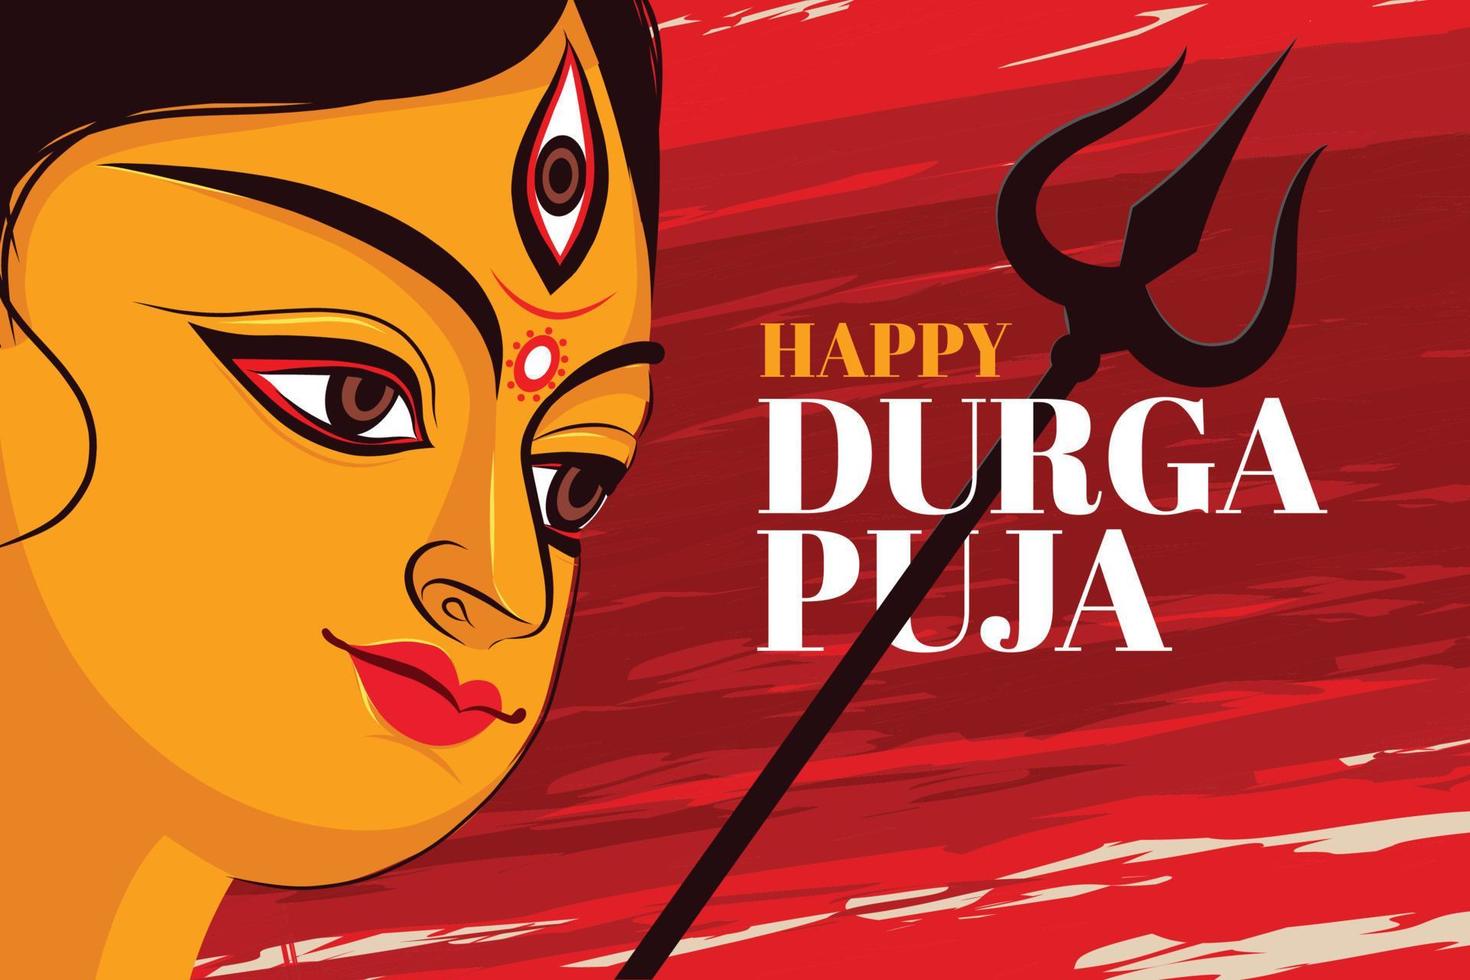 ilustração do rosto da deusa durga em feliz durga puja subh navratri fundo de banner de cabeçalho religioso indiano vetor